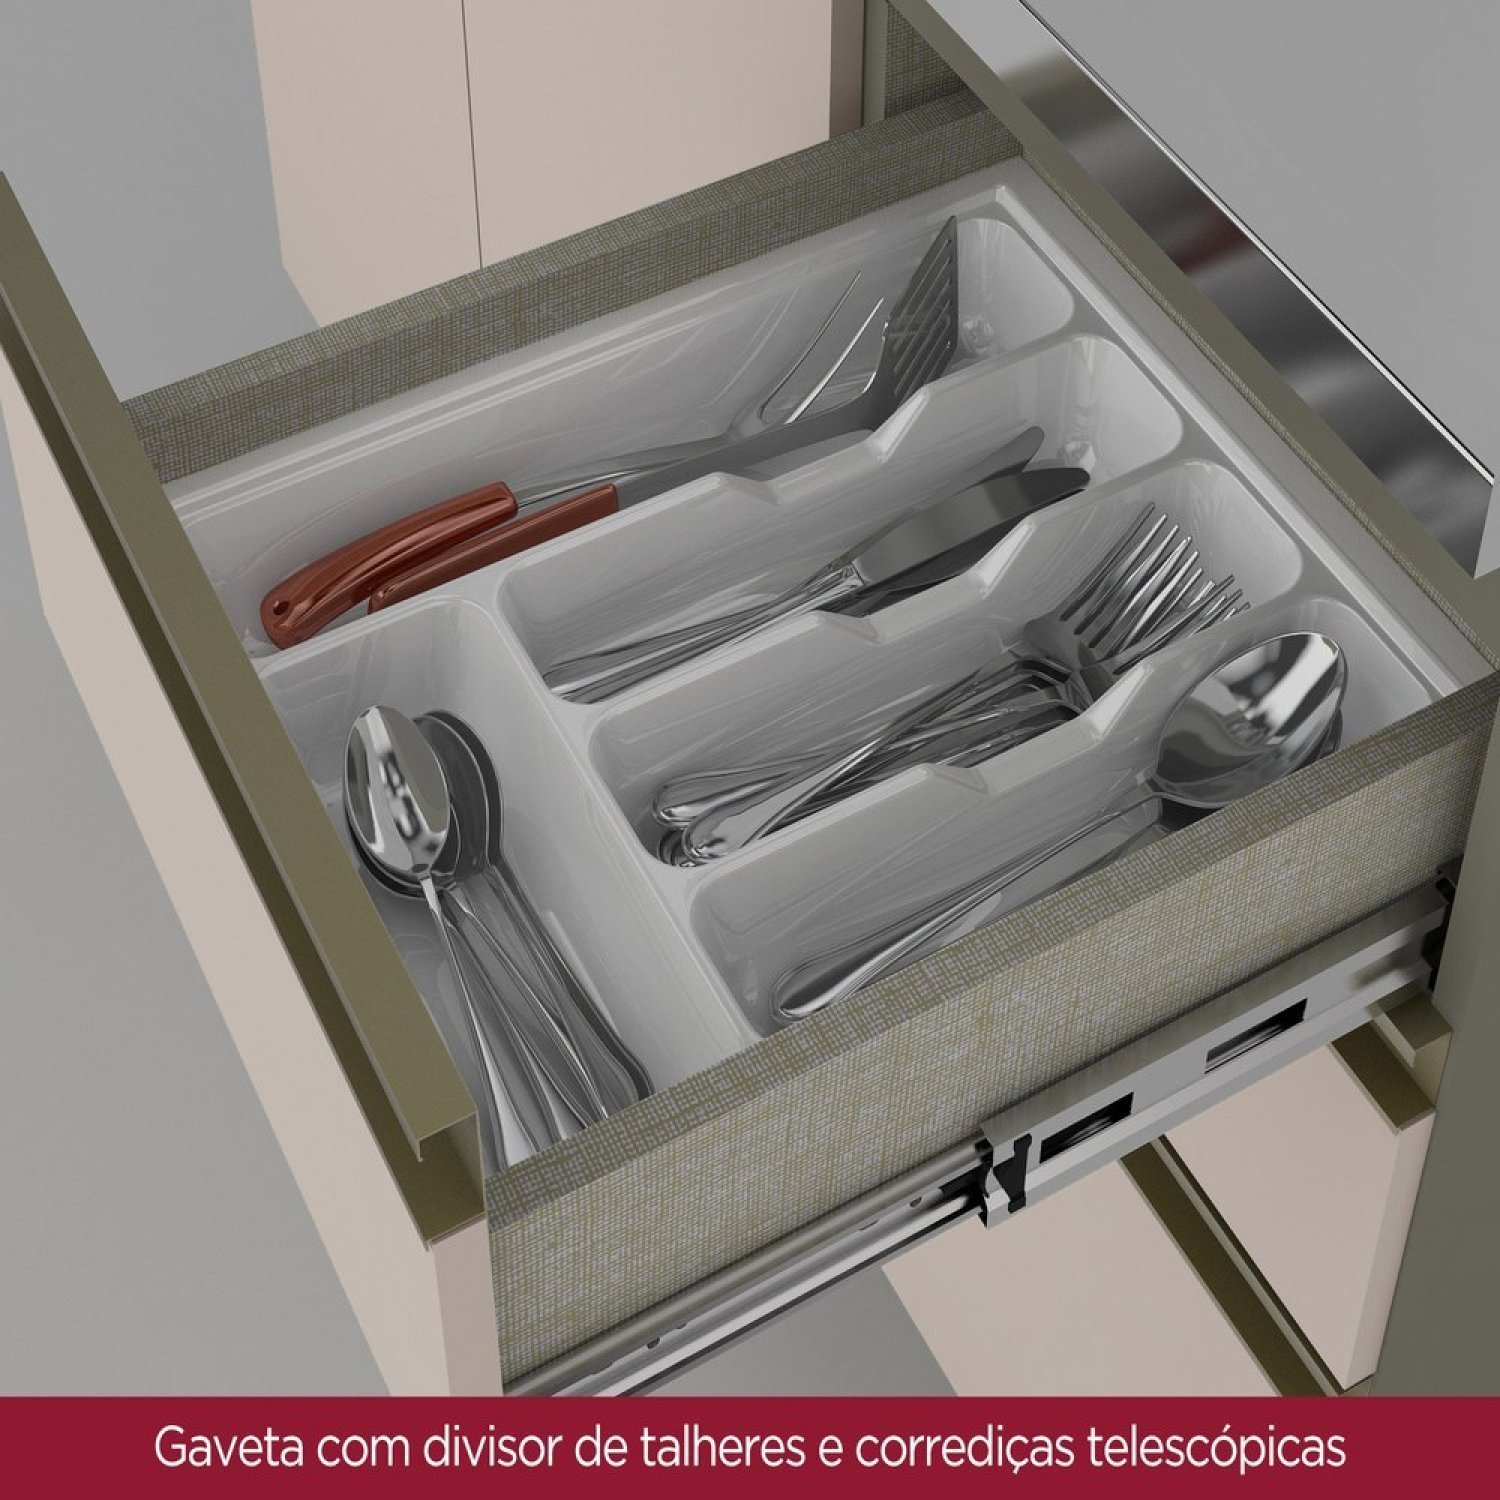 Cozinha Completa 7 Peças para Forno Embutir e Cooktop 11 Portas Aurora Espresso Móveis - 7